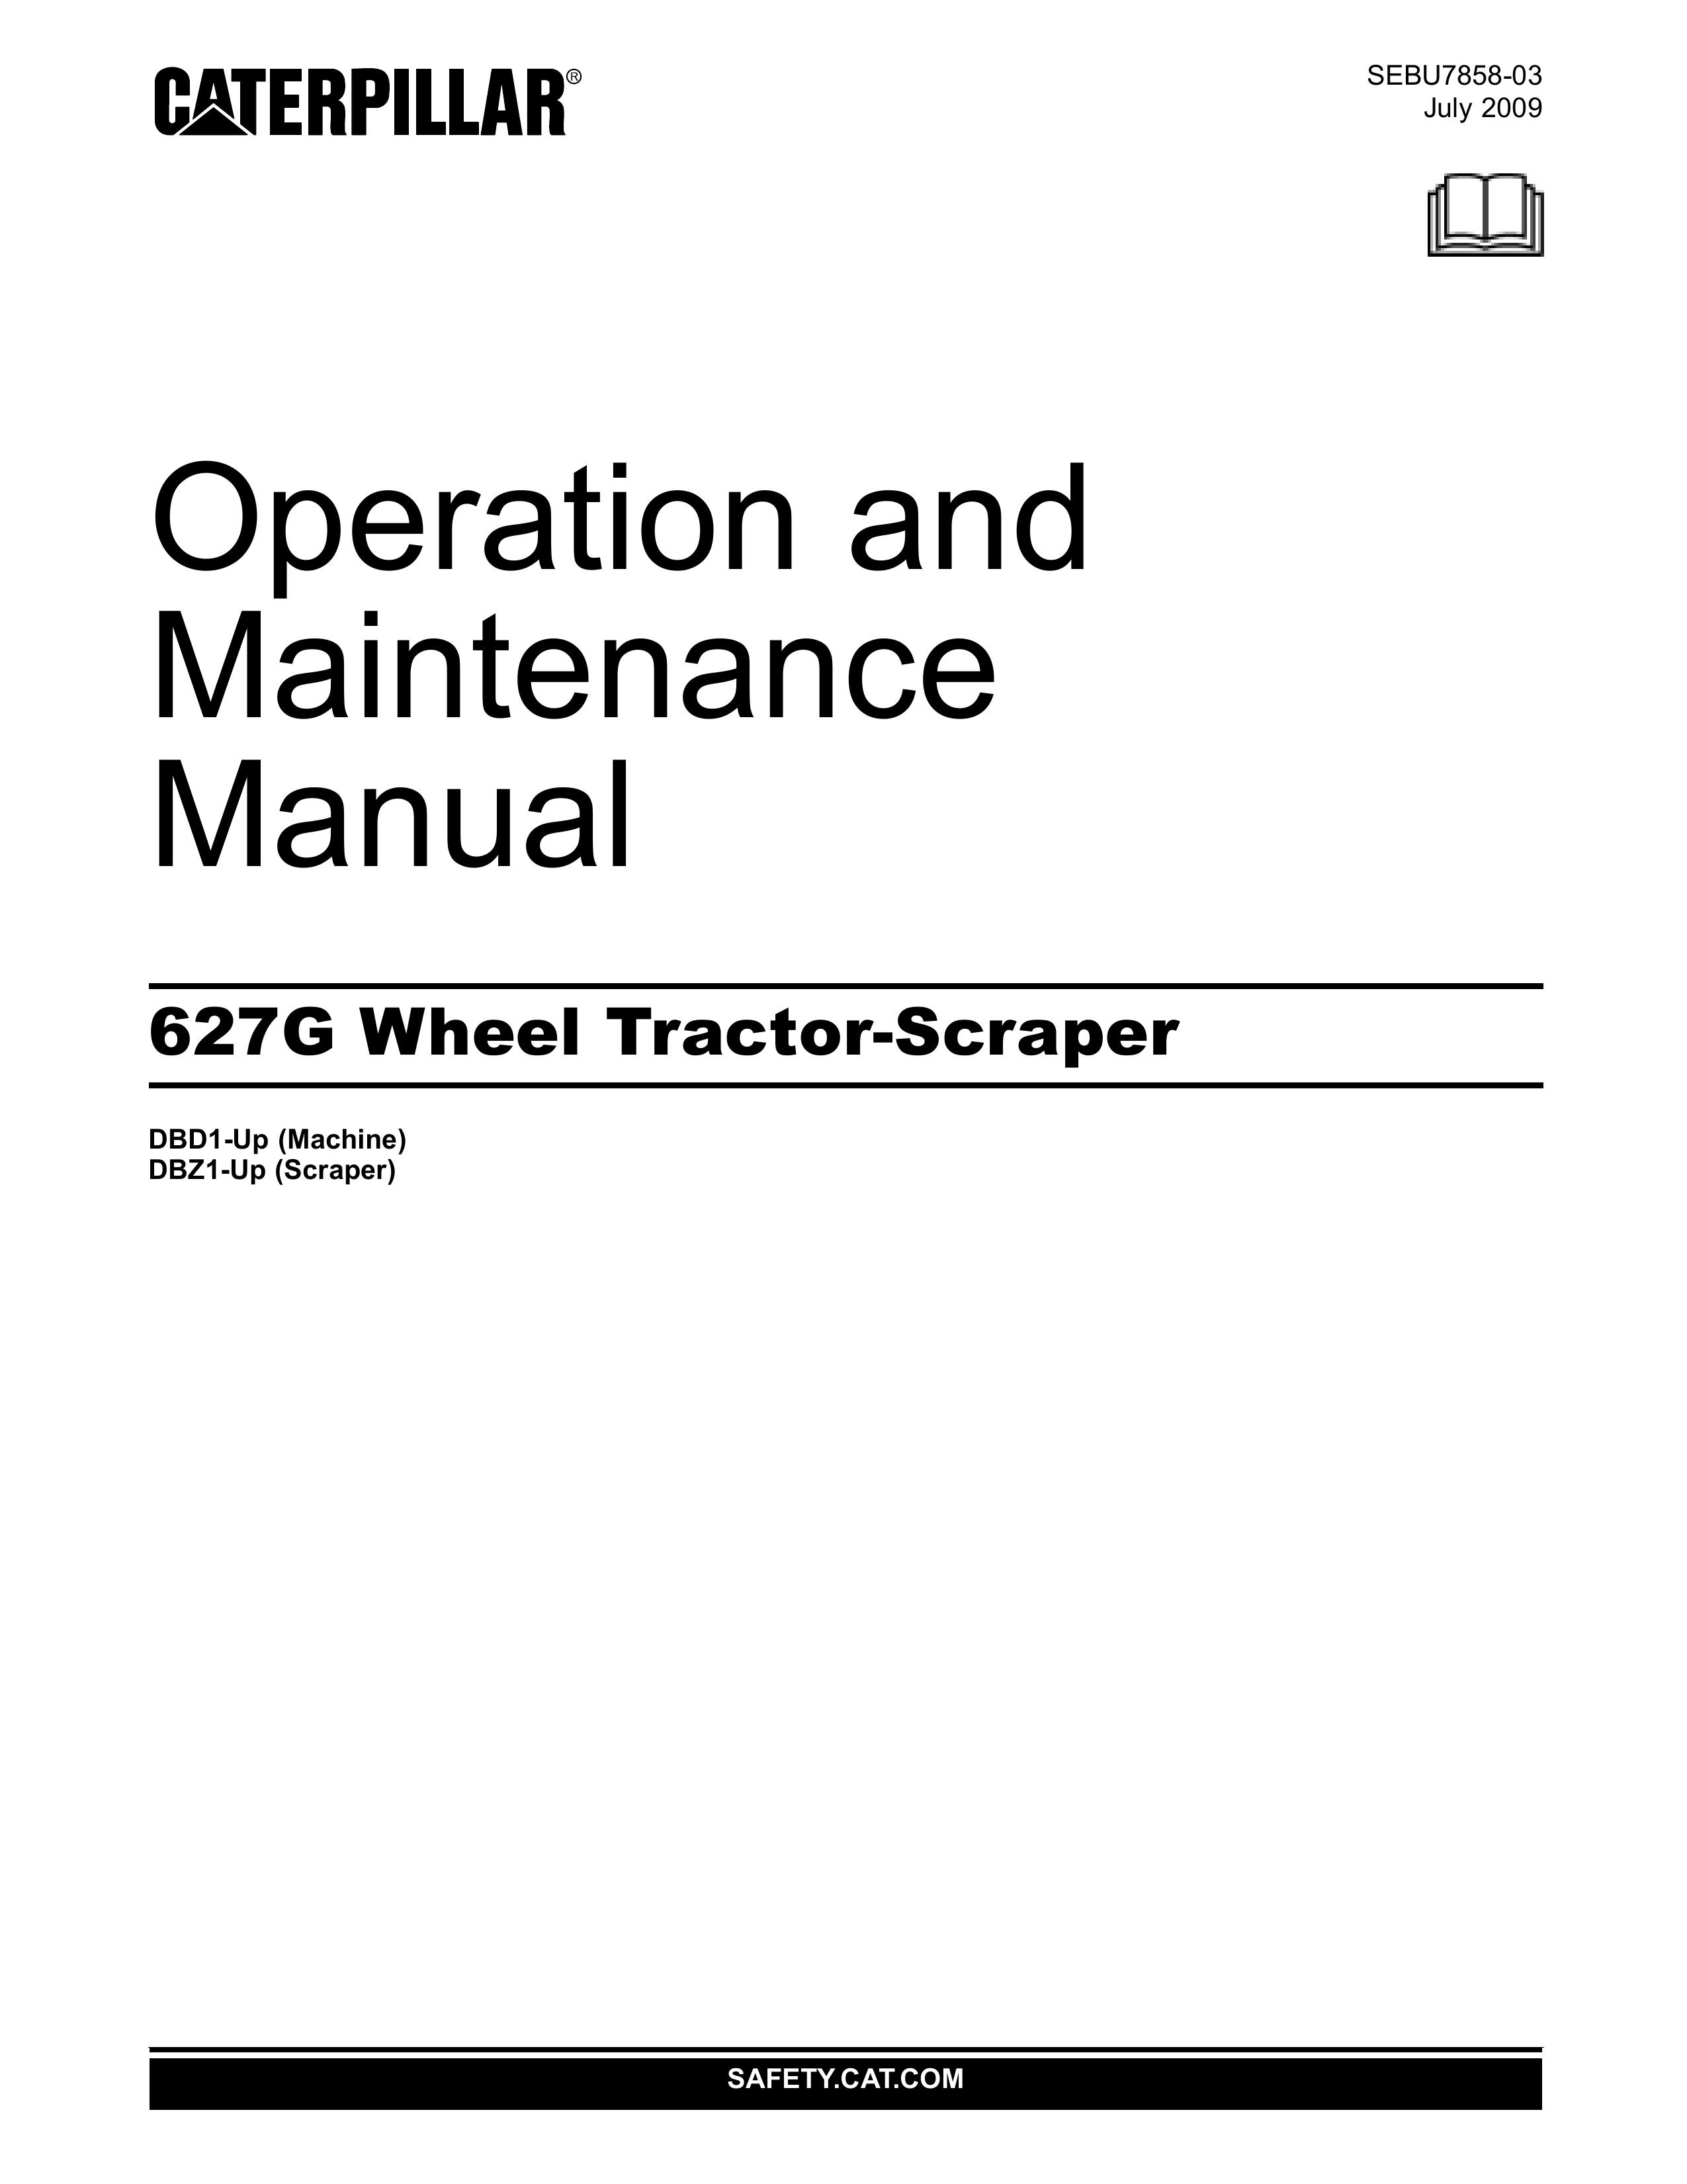 CAT 627G Lawn Mower User Manual